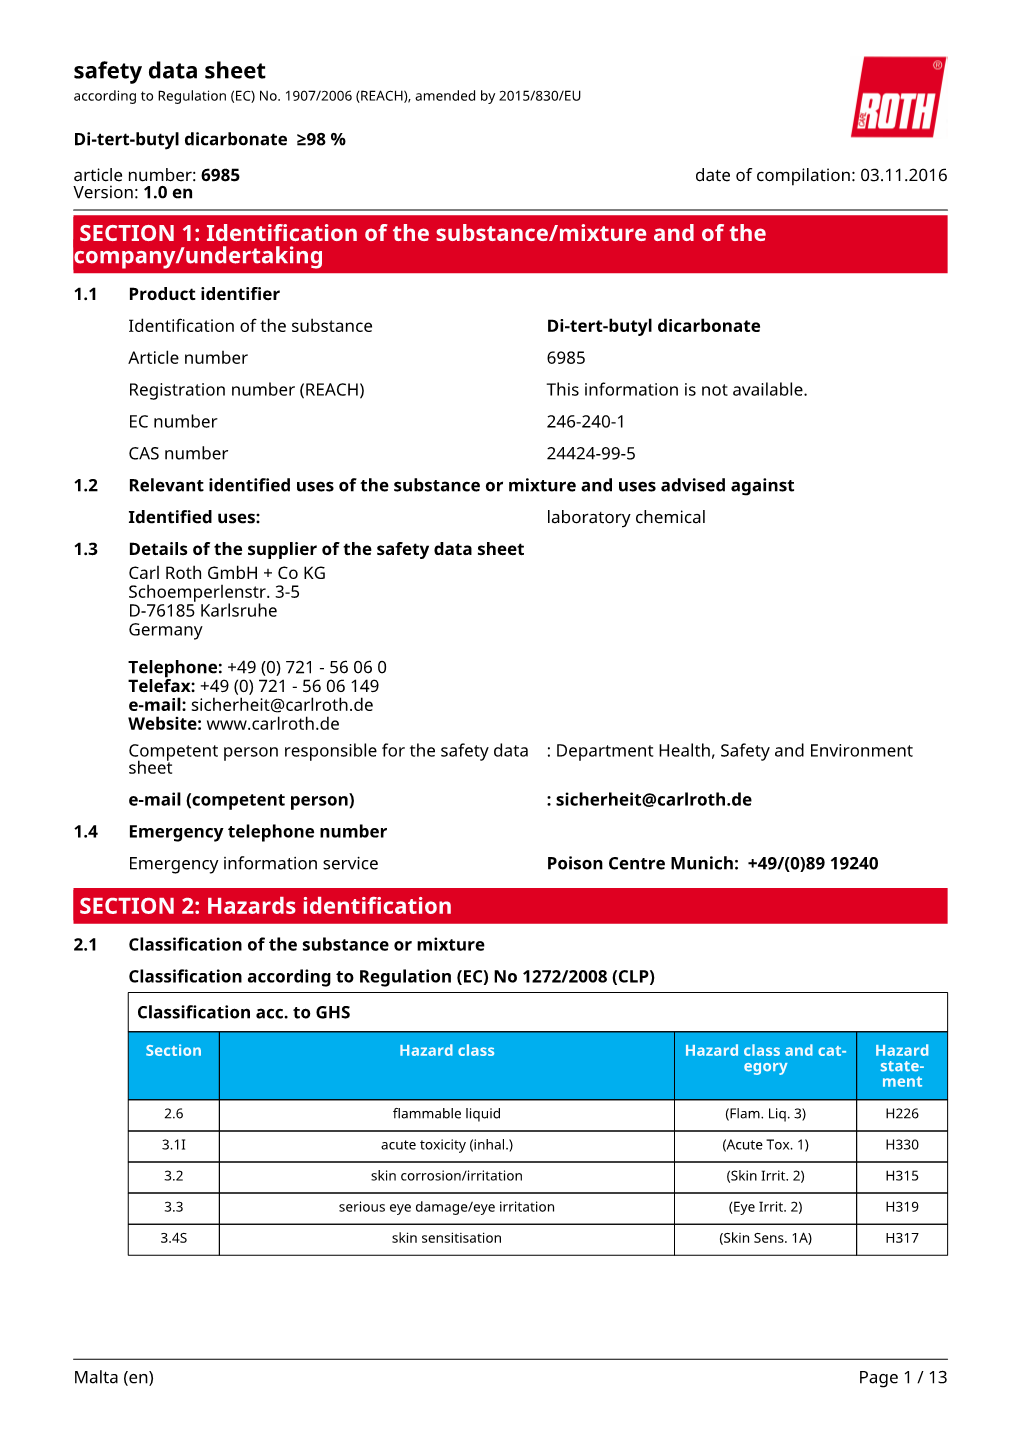 Safety Data Sheet: Di-Tert-Butyl Dicarbonate